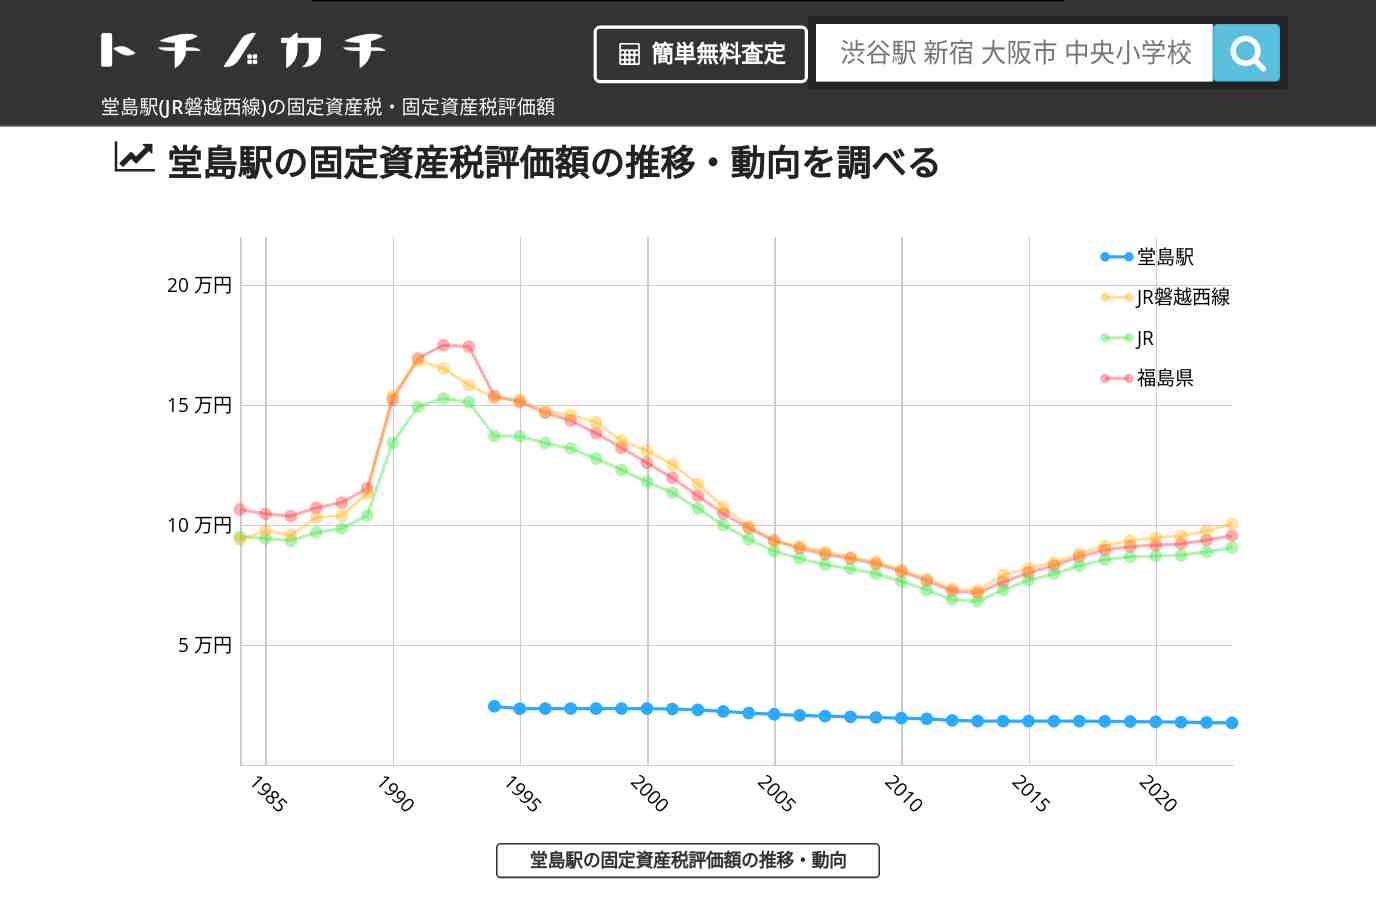 堂島駅(JR磐越西線)の固定資産税・固定資産税評価額 | トチノカチ